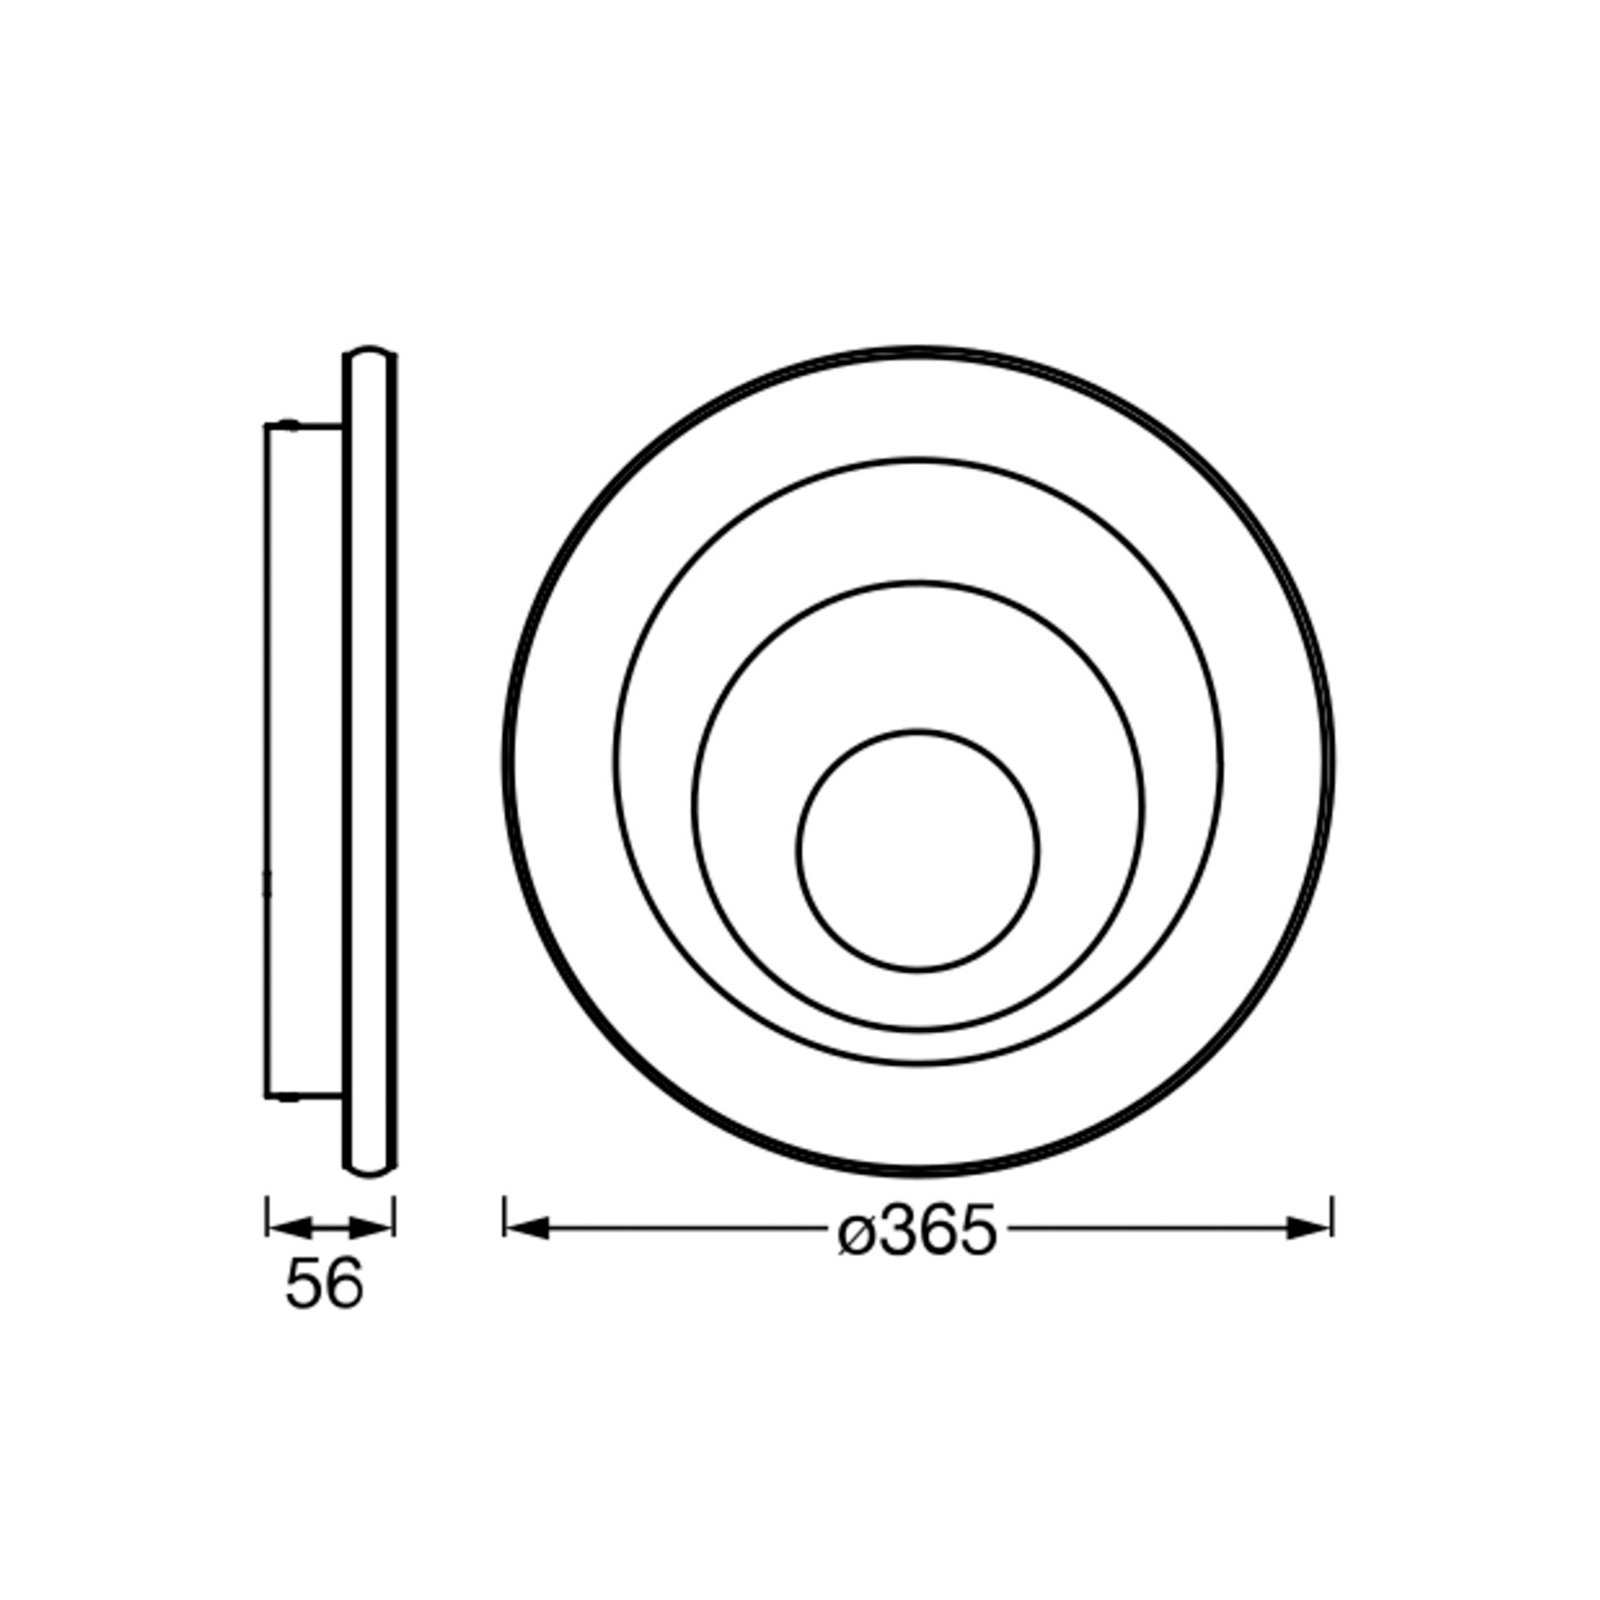 LEDVANCE Orbis Spiral Round plafonnier Ø36,5cm